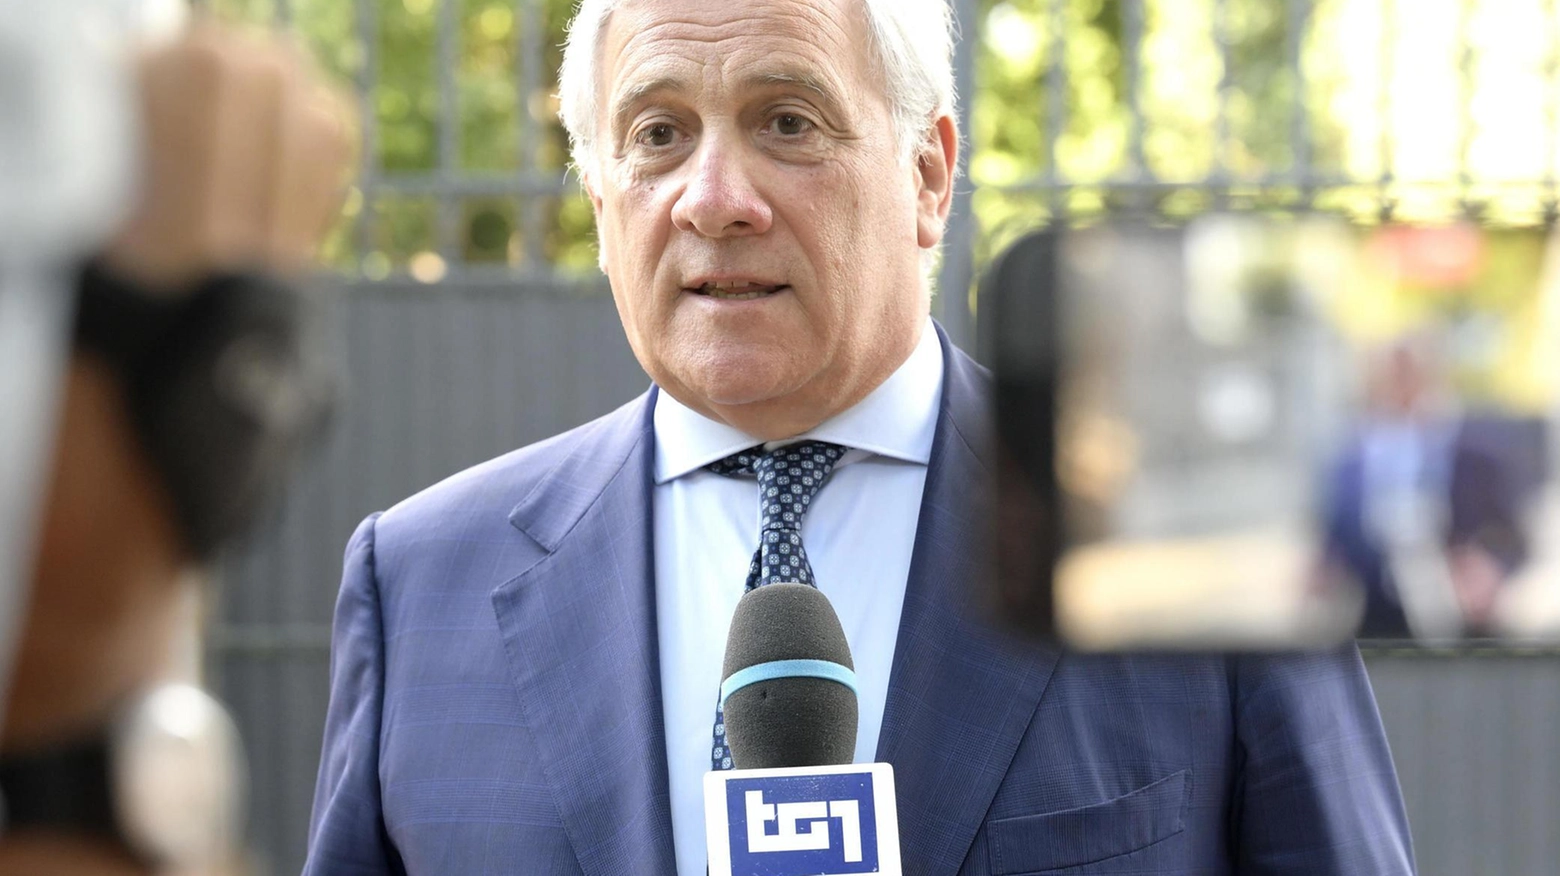 Antonio Tajani 